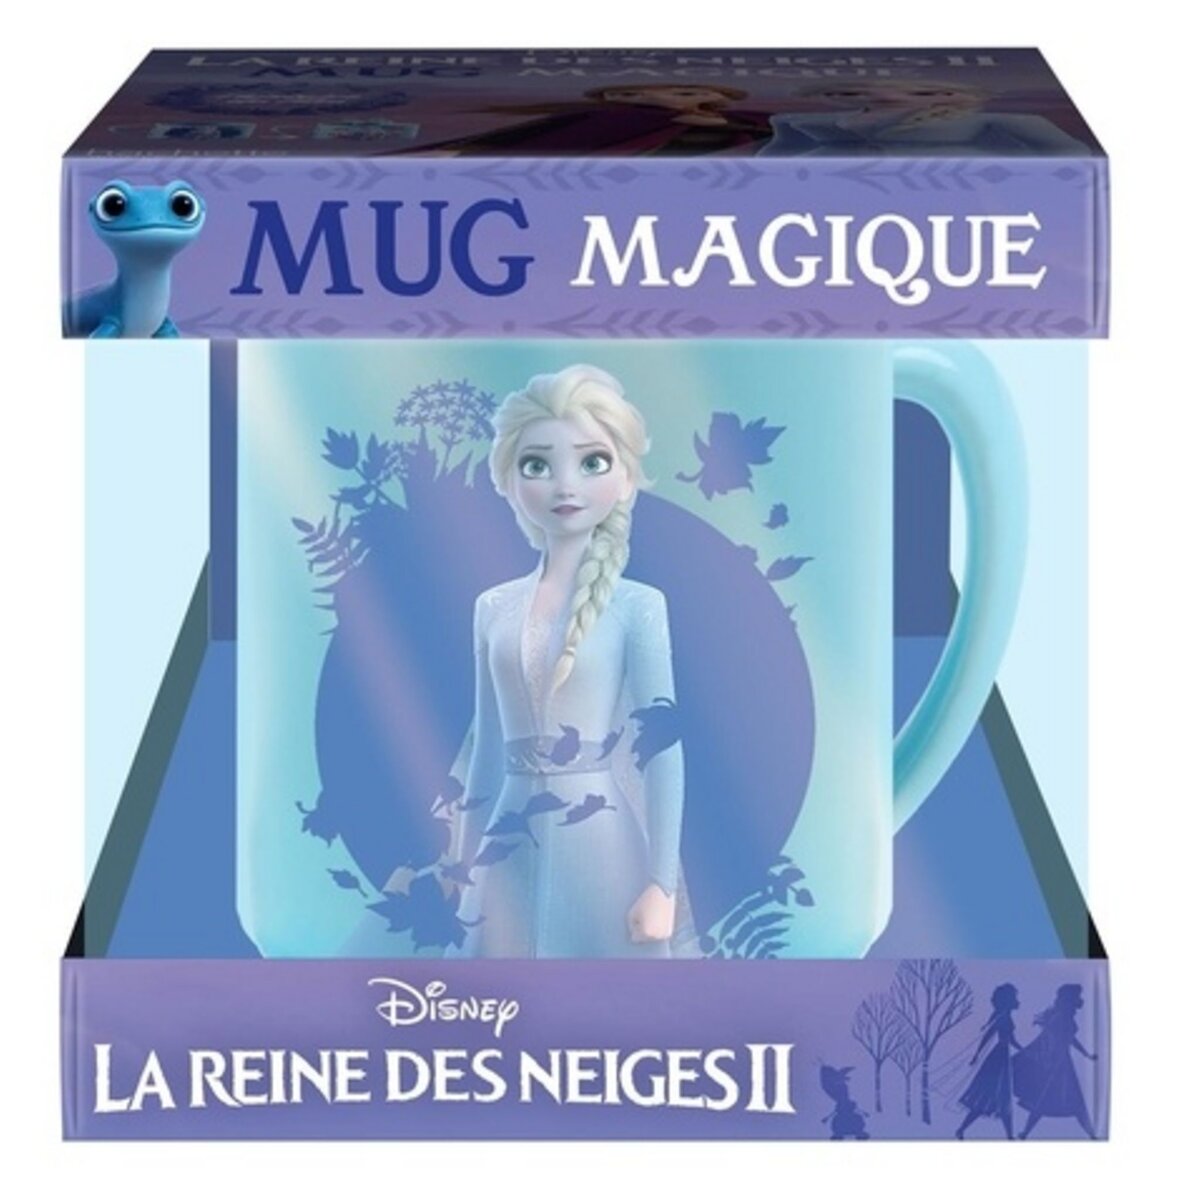  COFFRET MUG MAGIQUE LA REINE DES NEIGES II. L'HISTOIRE DU FILM AVEC 1 MUG MAGIQUE, Disney